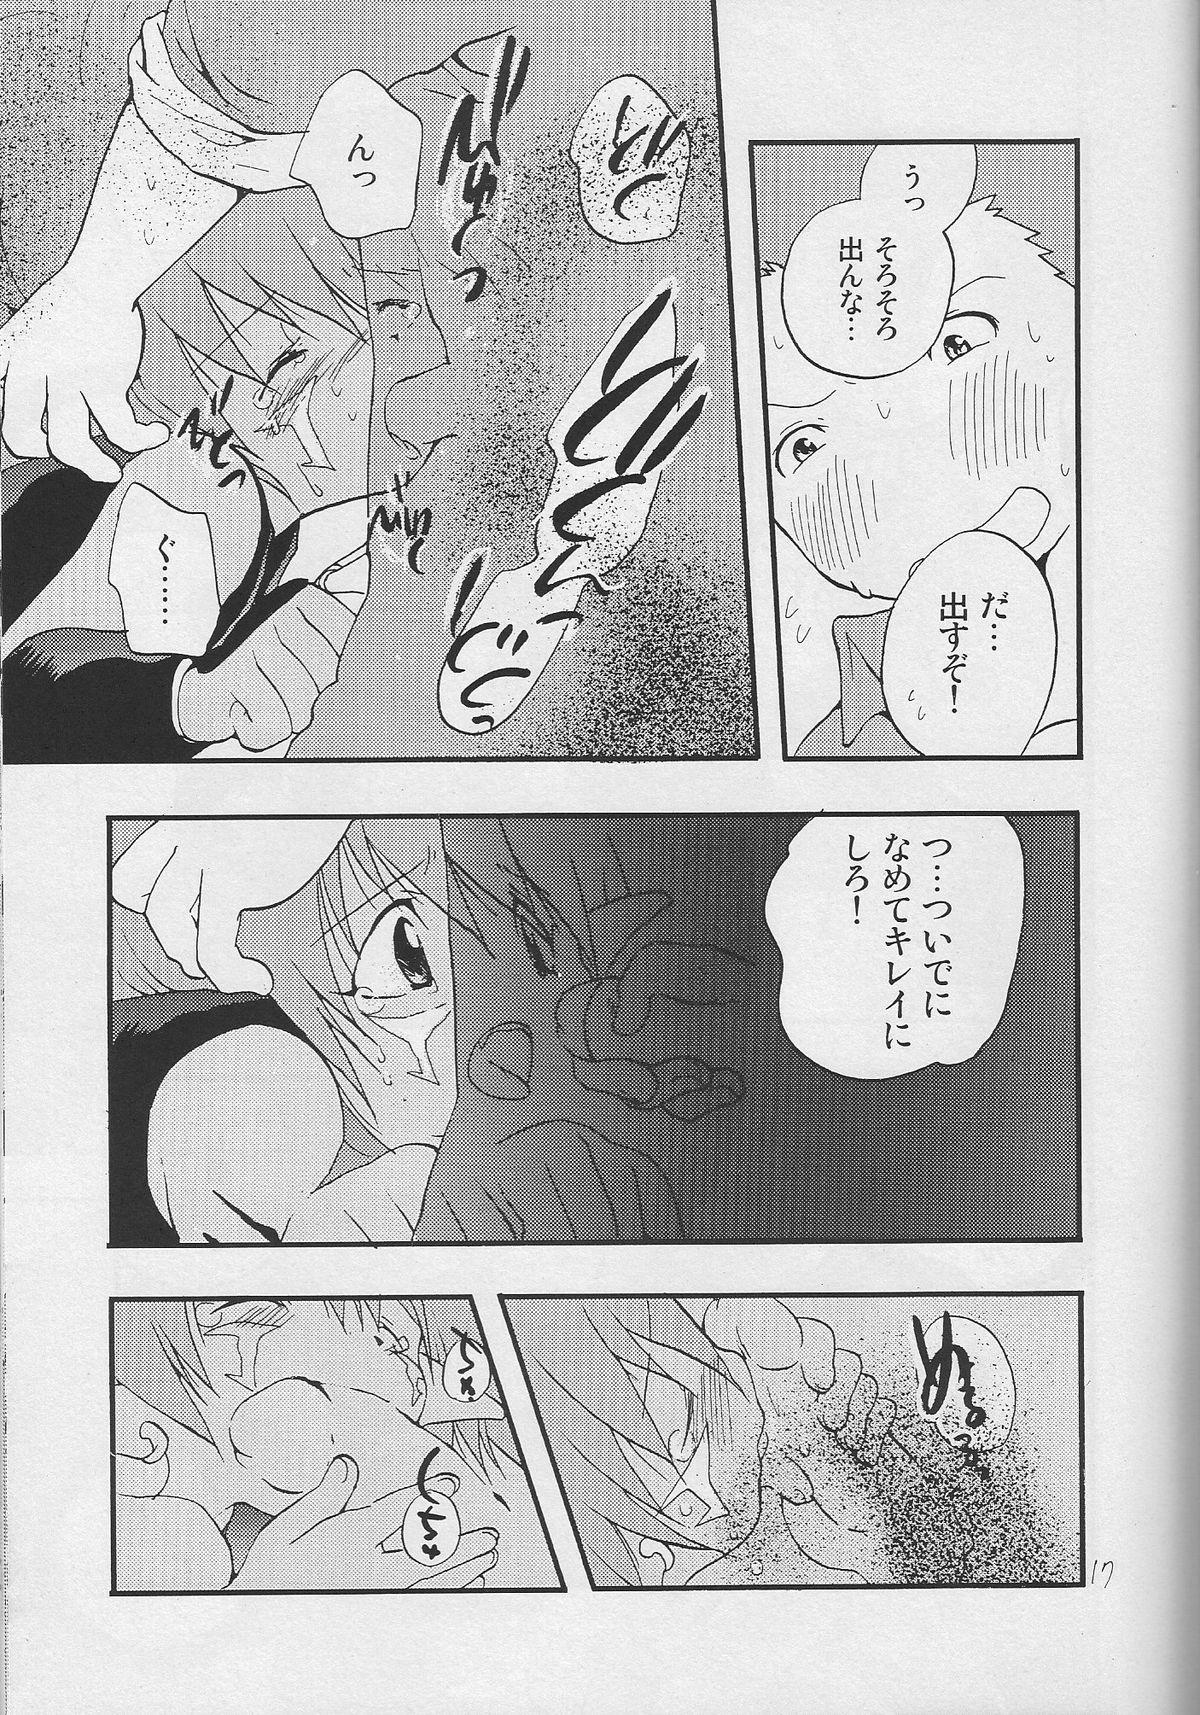 Sentones WHATS UP GUYS - Digimon frontier Cavalgando - Page 7